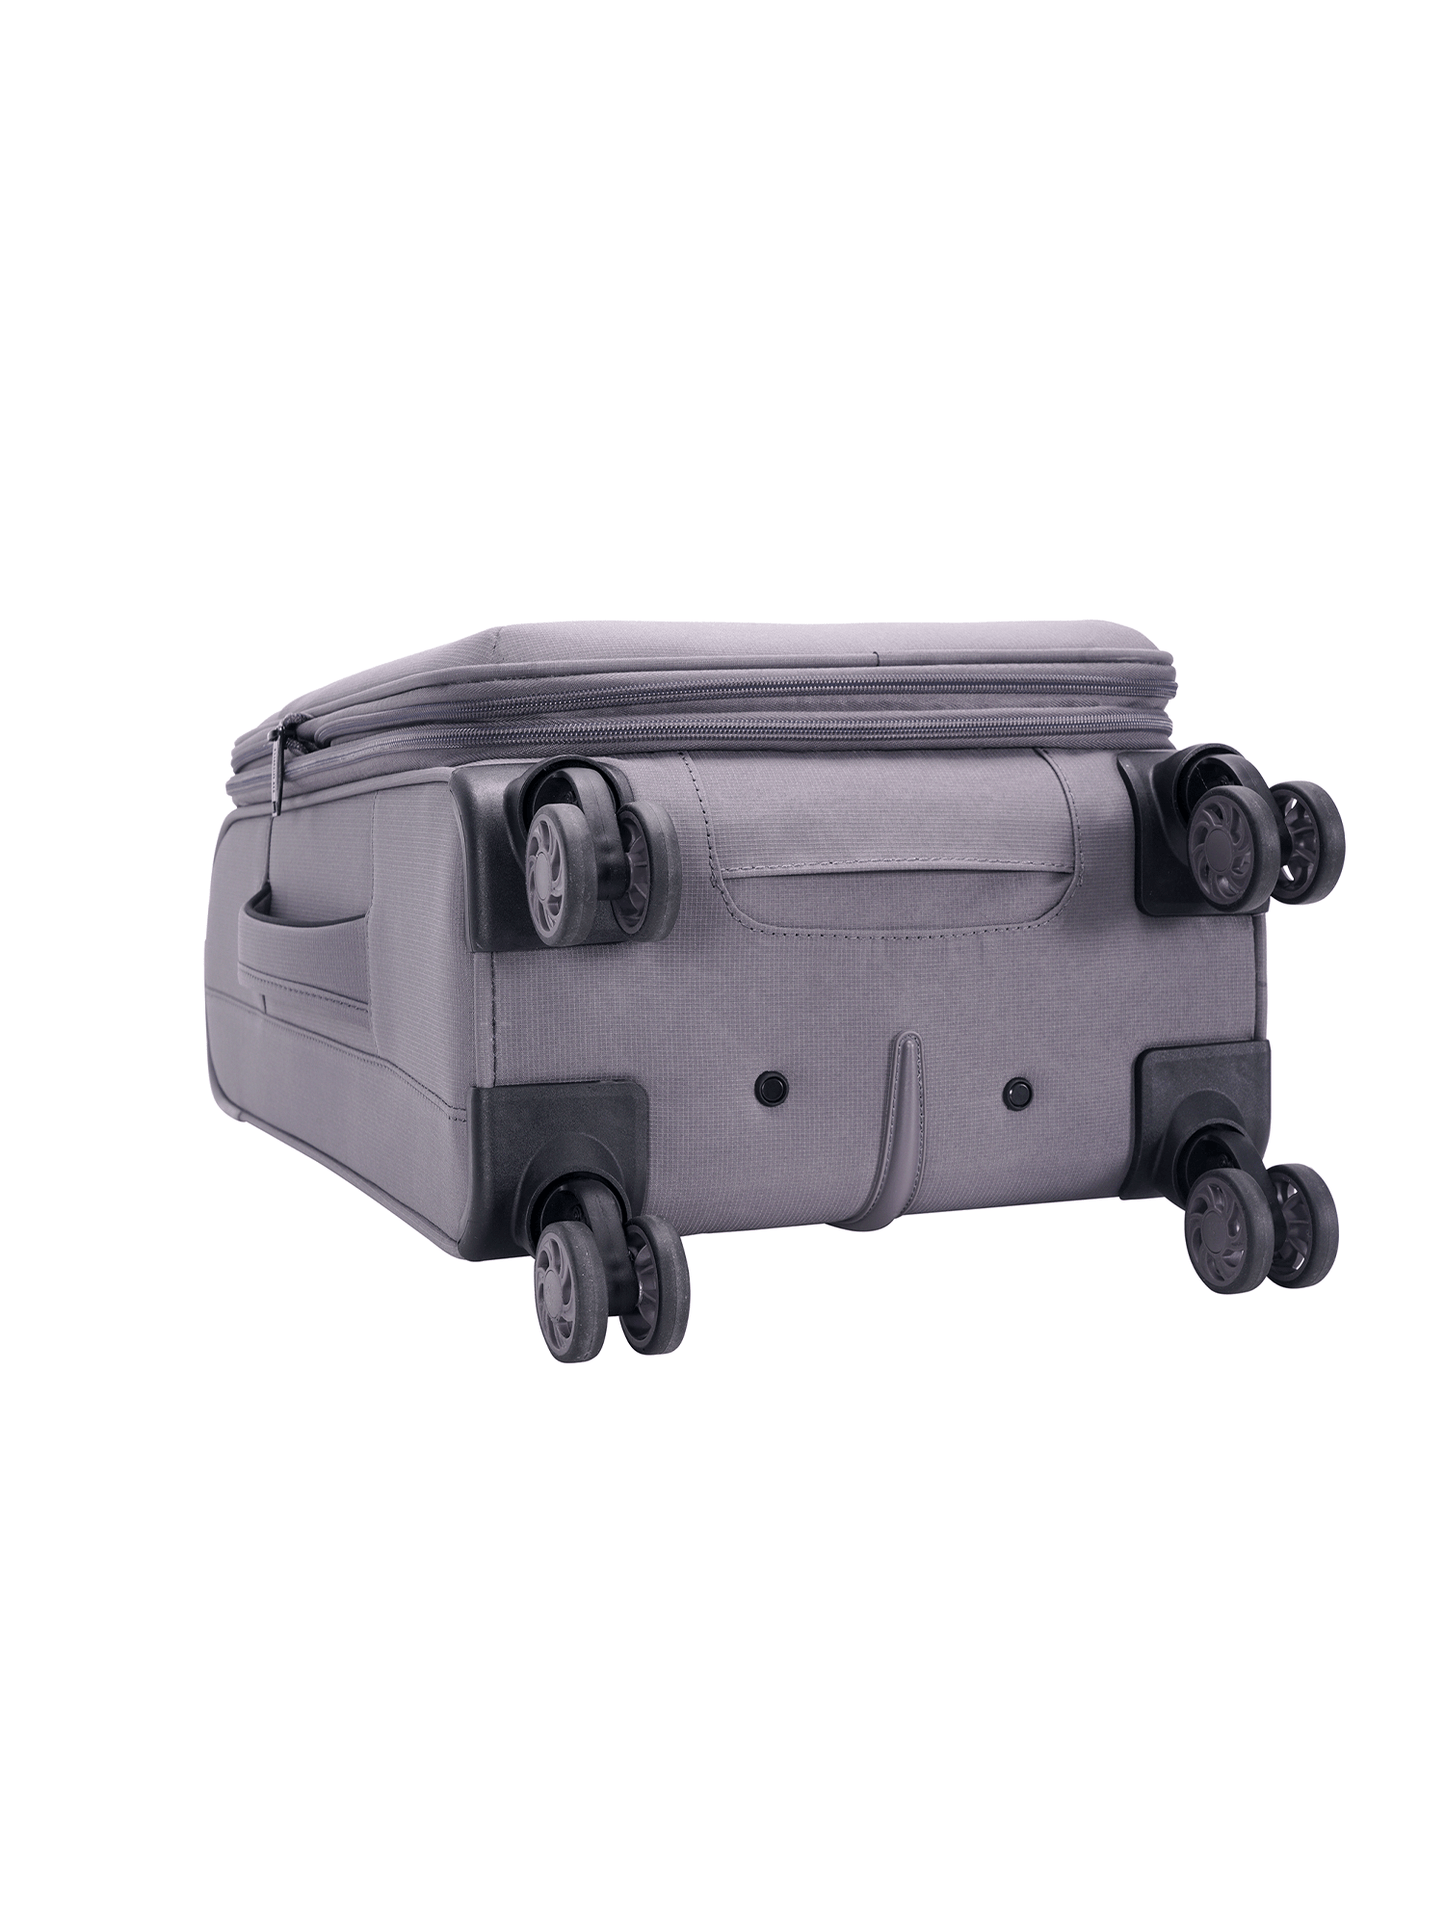 San Michelle Travel Companion 56cm Suitcase - San Michelle Bags suitcase nz